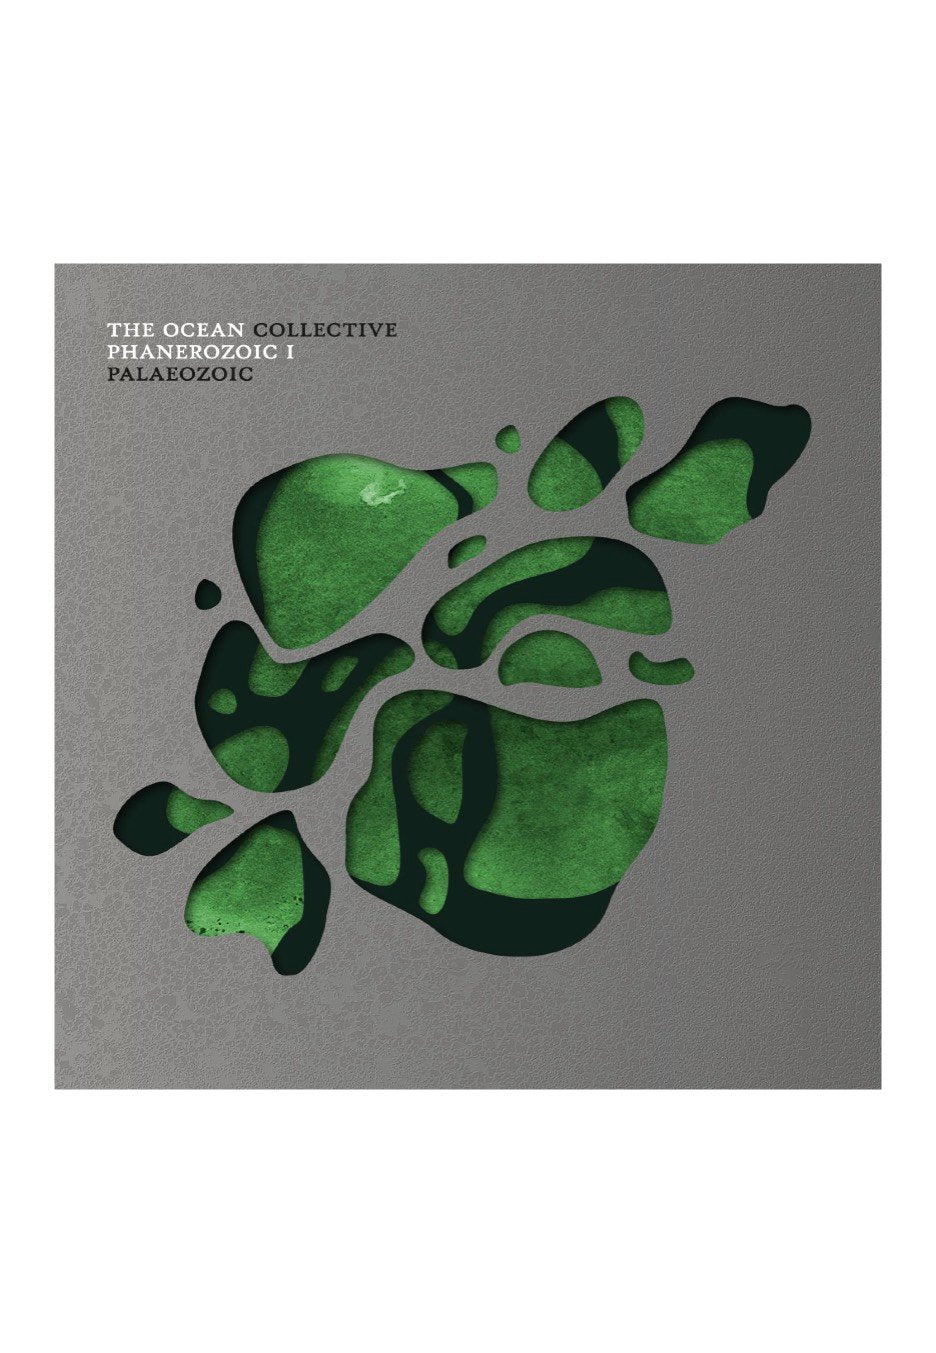 The Ocean - Phanerozoic I: Palaeozoic Ltd. - Digipak CD